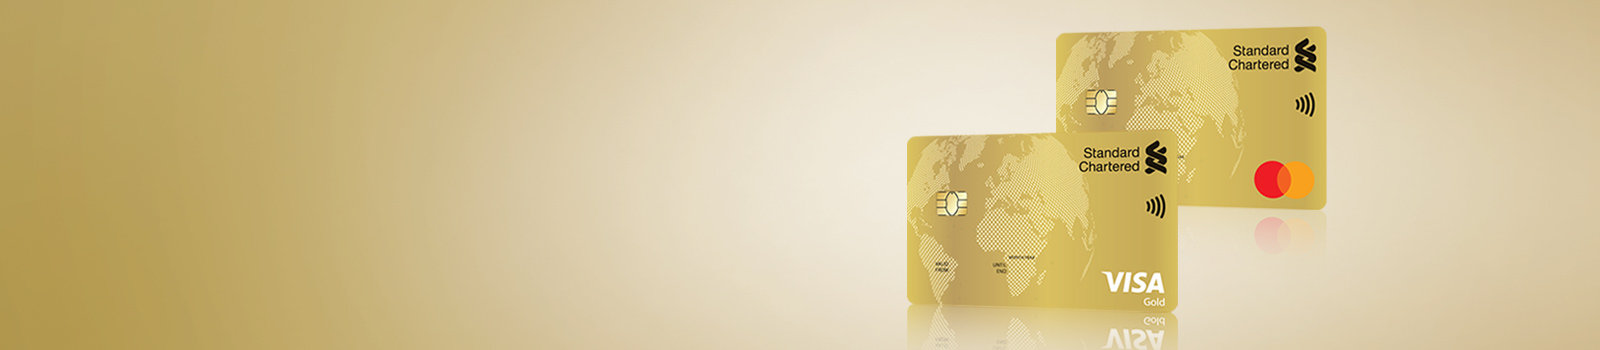 Gold Visa/MasterCard Credit Card